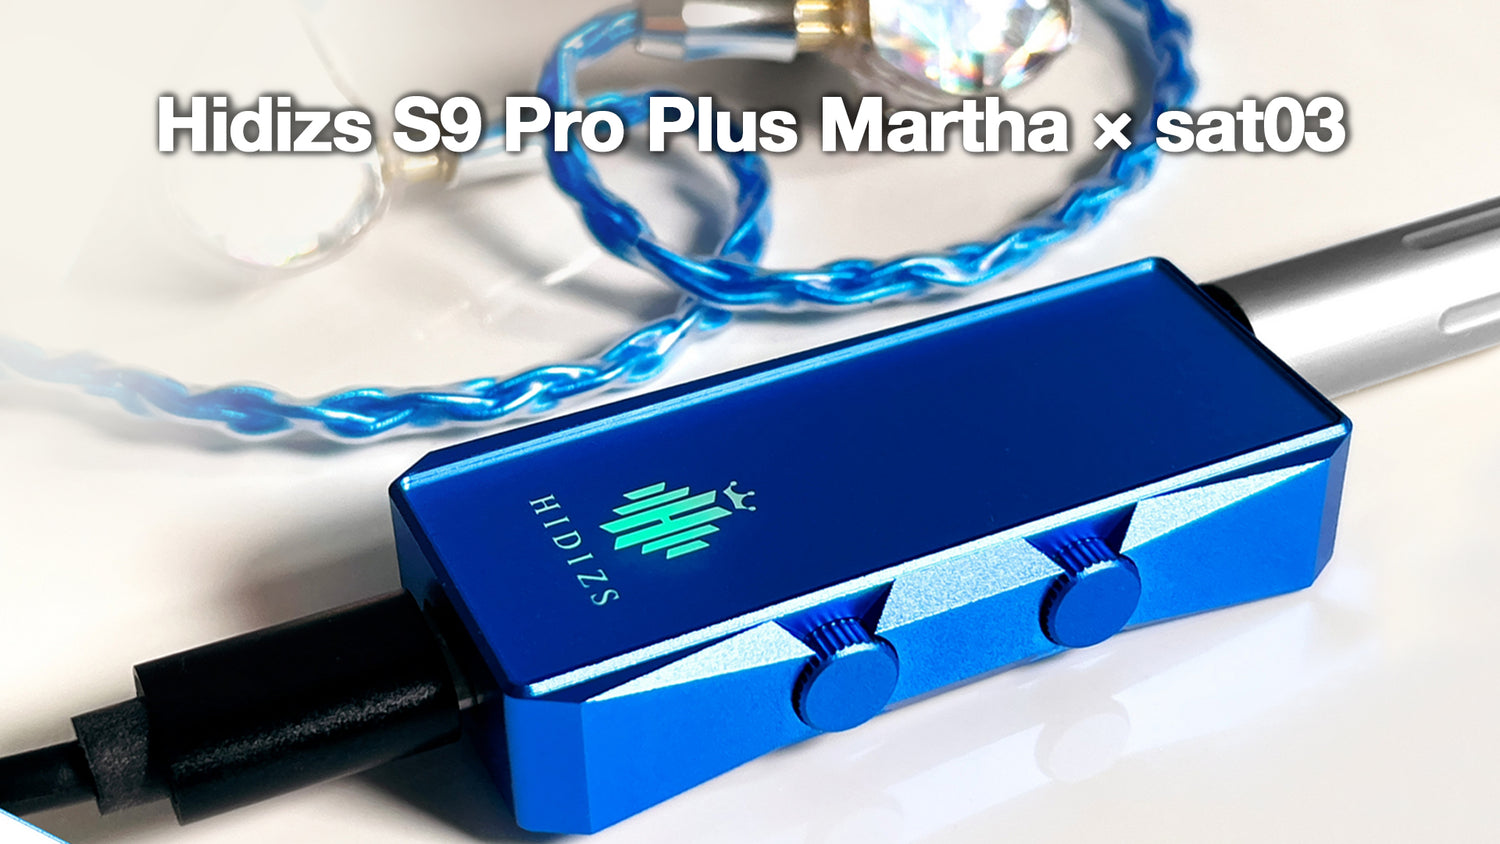 Hidizs S9 Pro Plus Martha Review - sat03